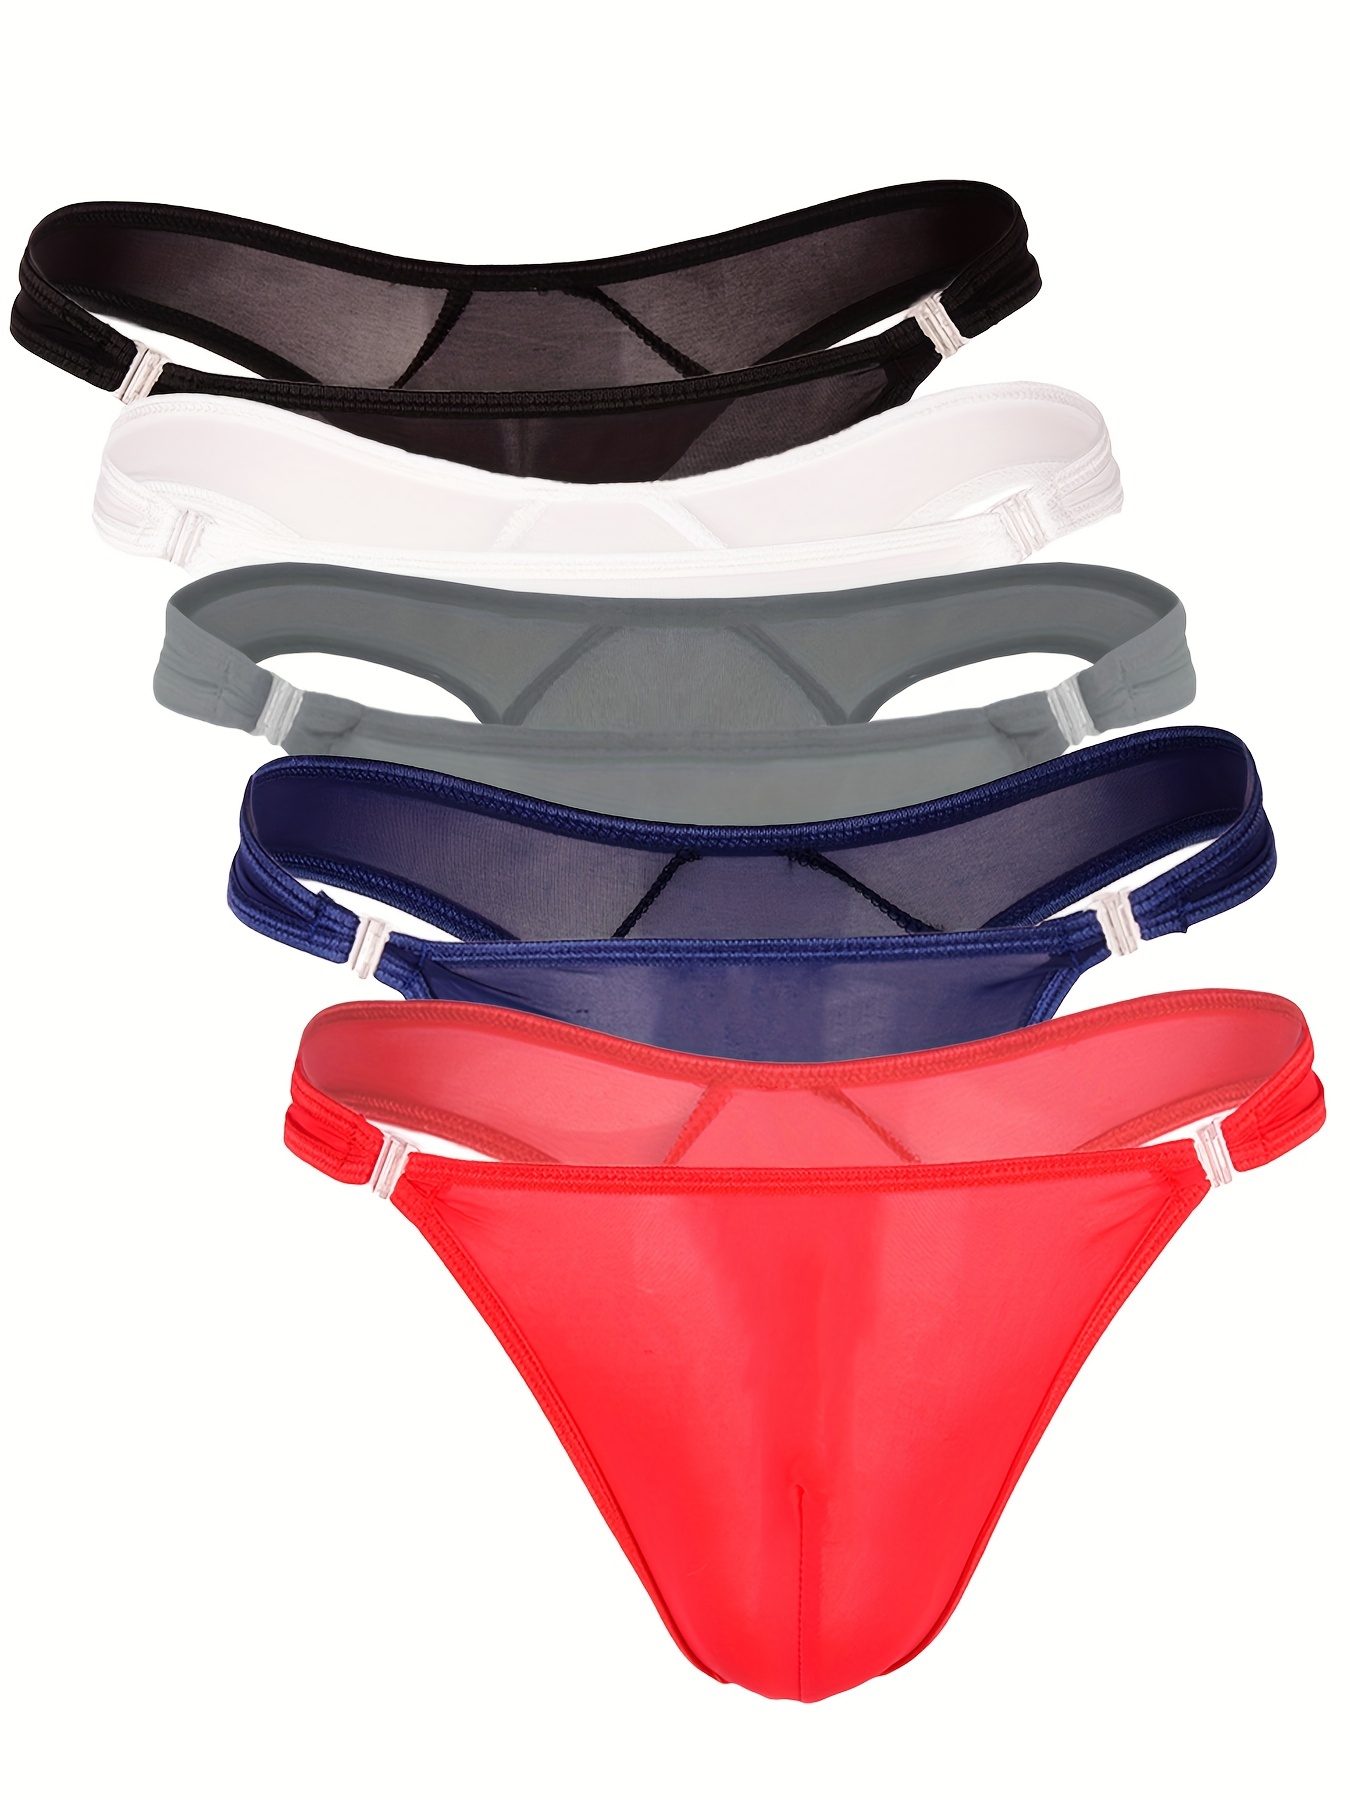 Mens Lingerie See Through Mesh Bulge Pouch Bikini G-String Thong